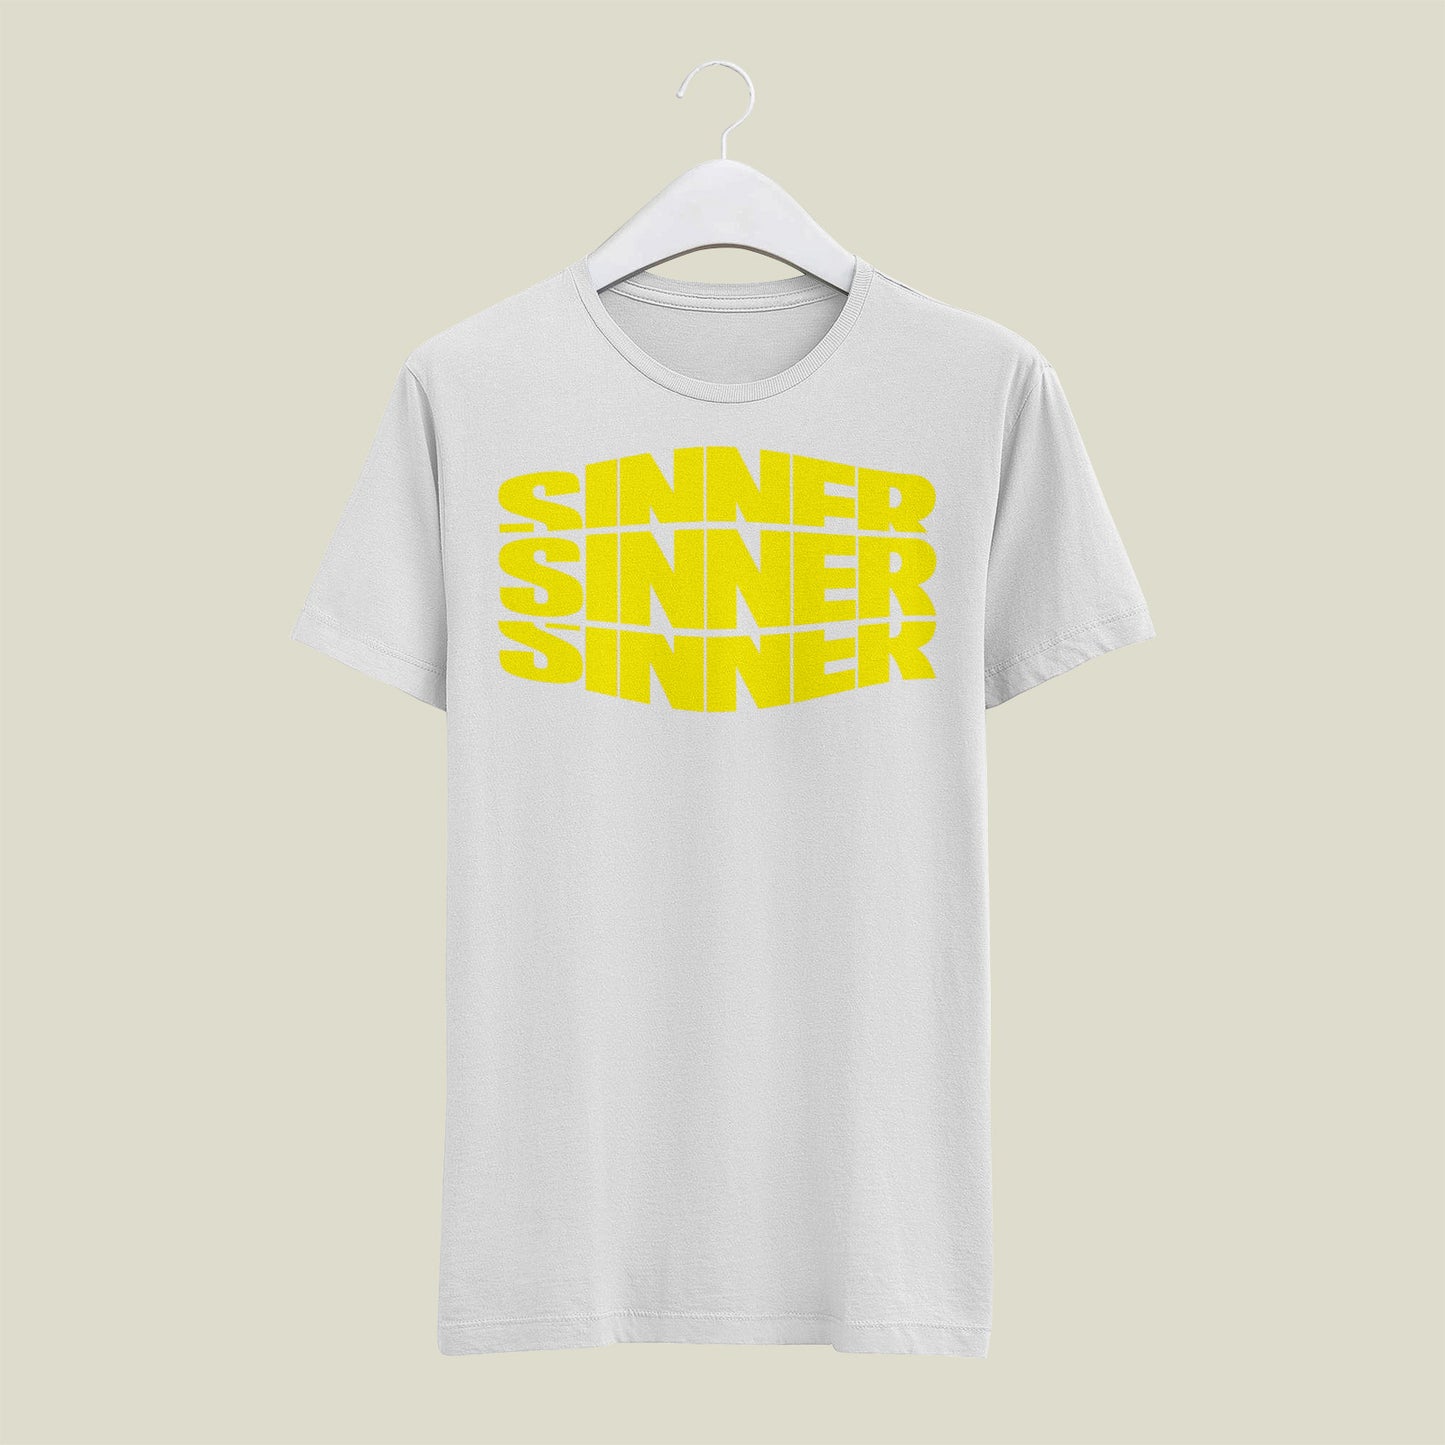 Sinner  T-Shirt